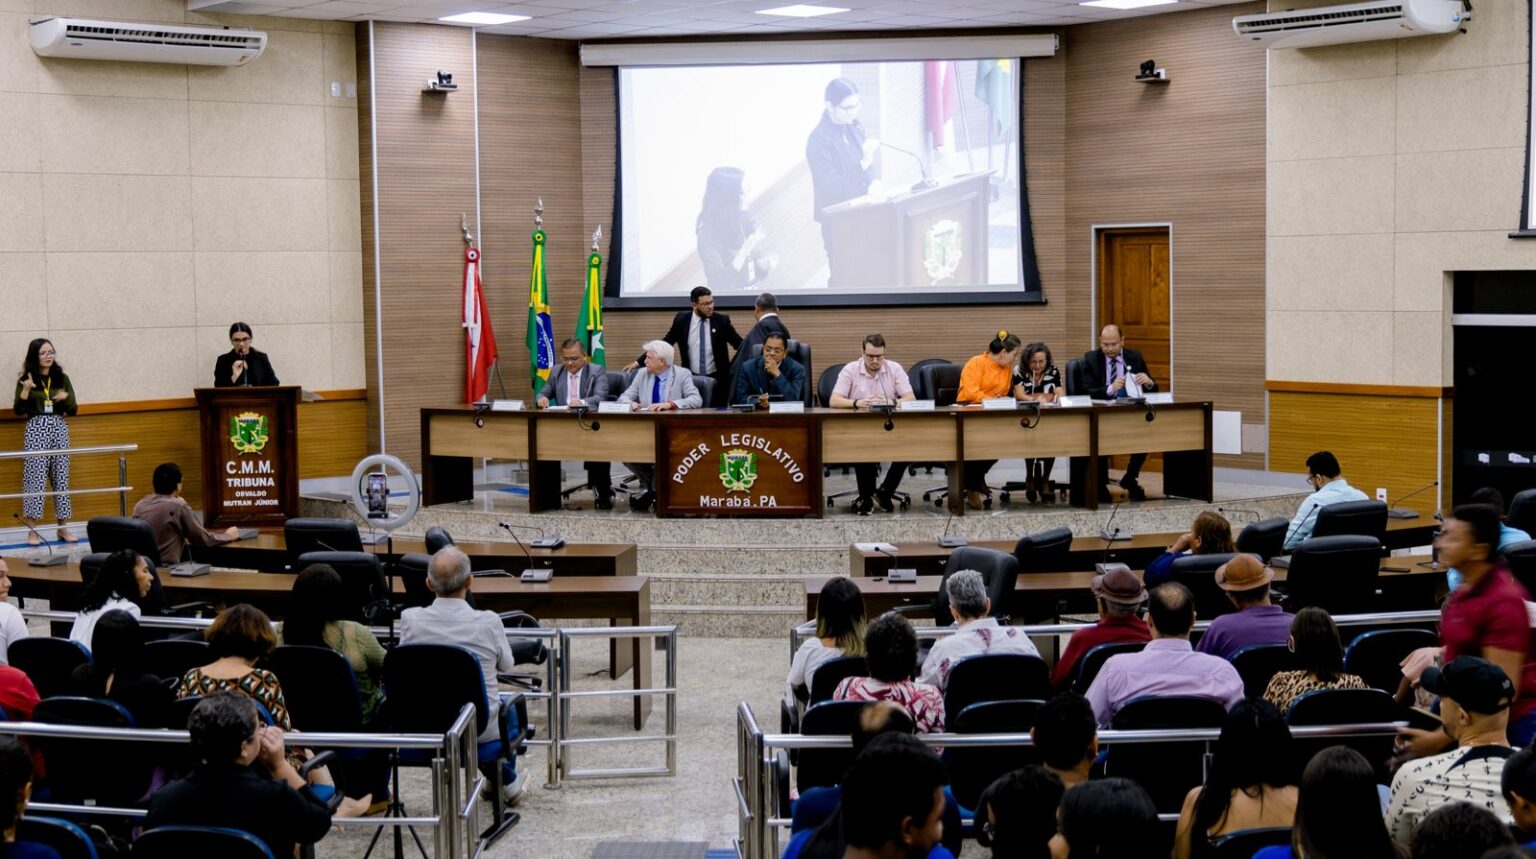 Audiência pública discute criação de curso de medicina na Unifesspa em Marabá